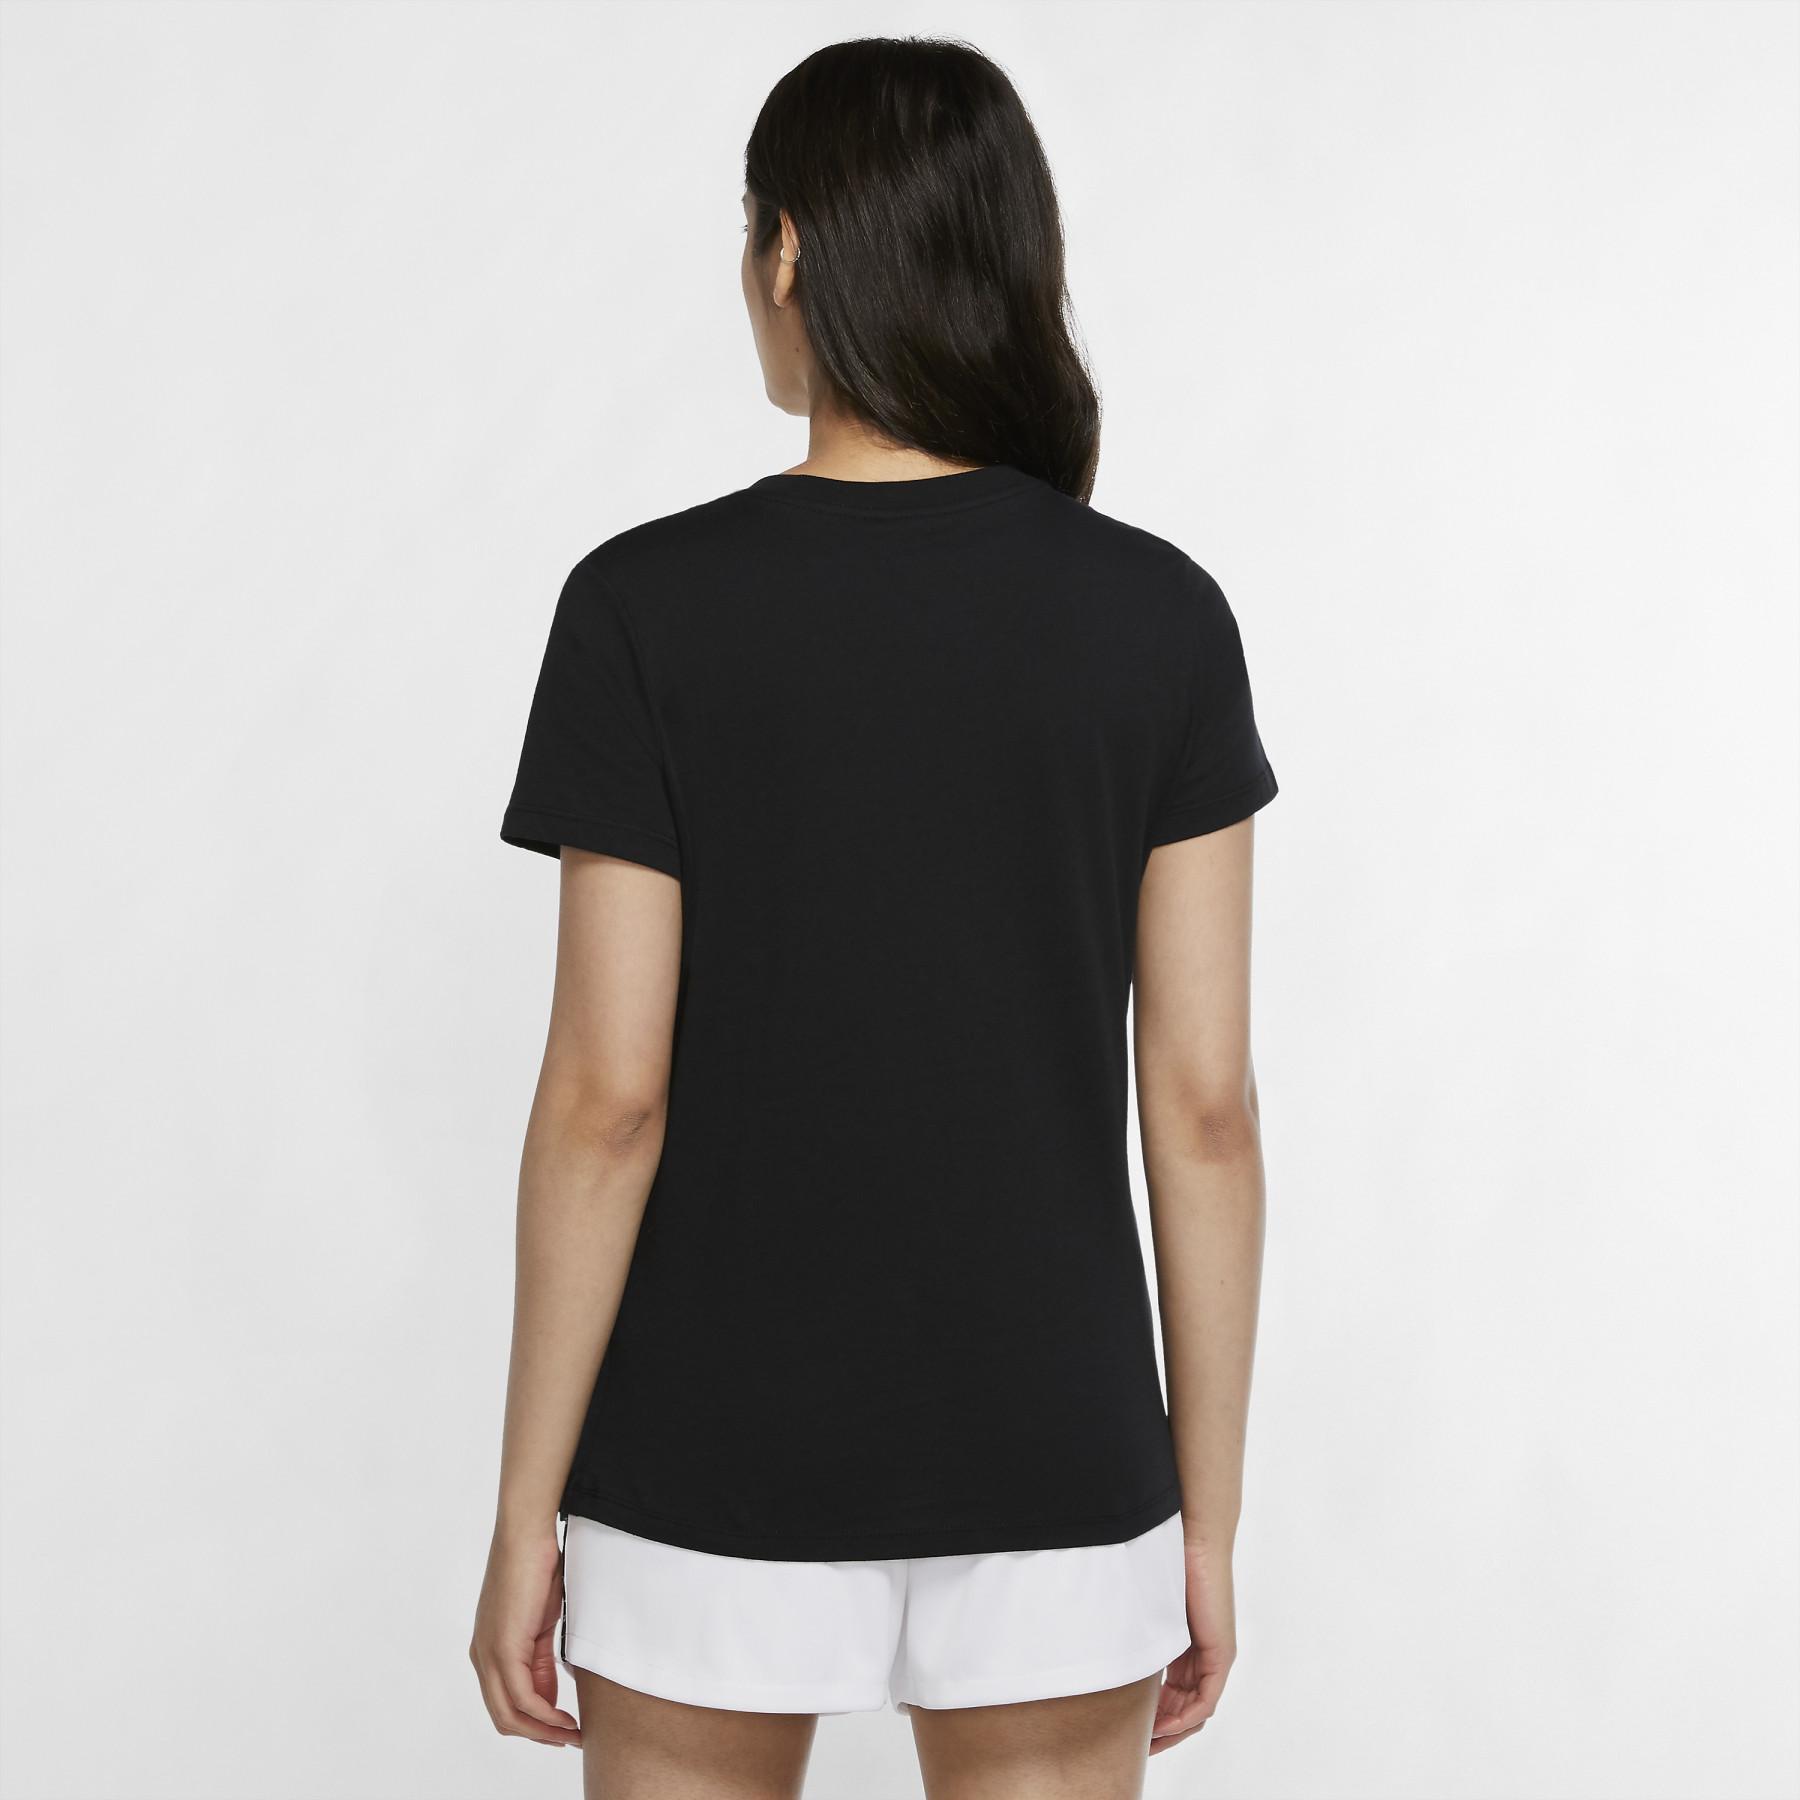 Camiseta feminina PSG coton 2020/21